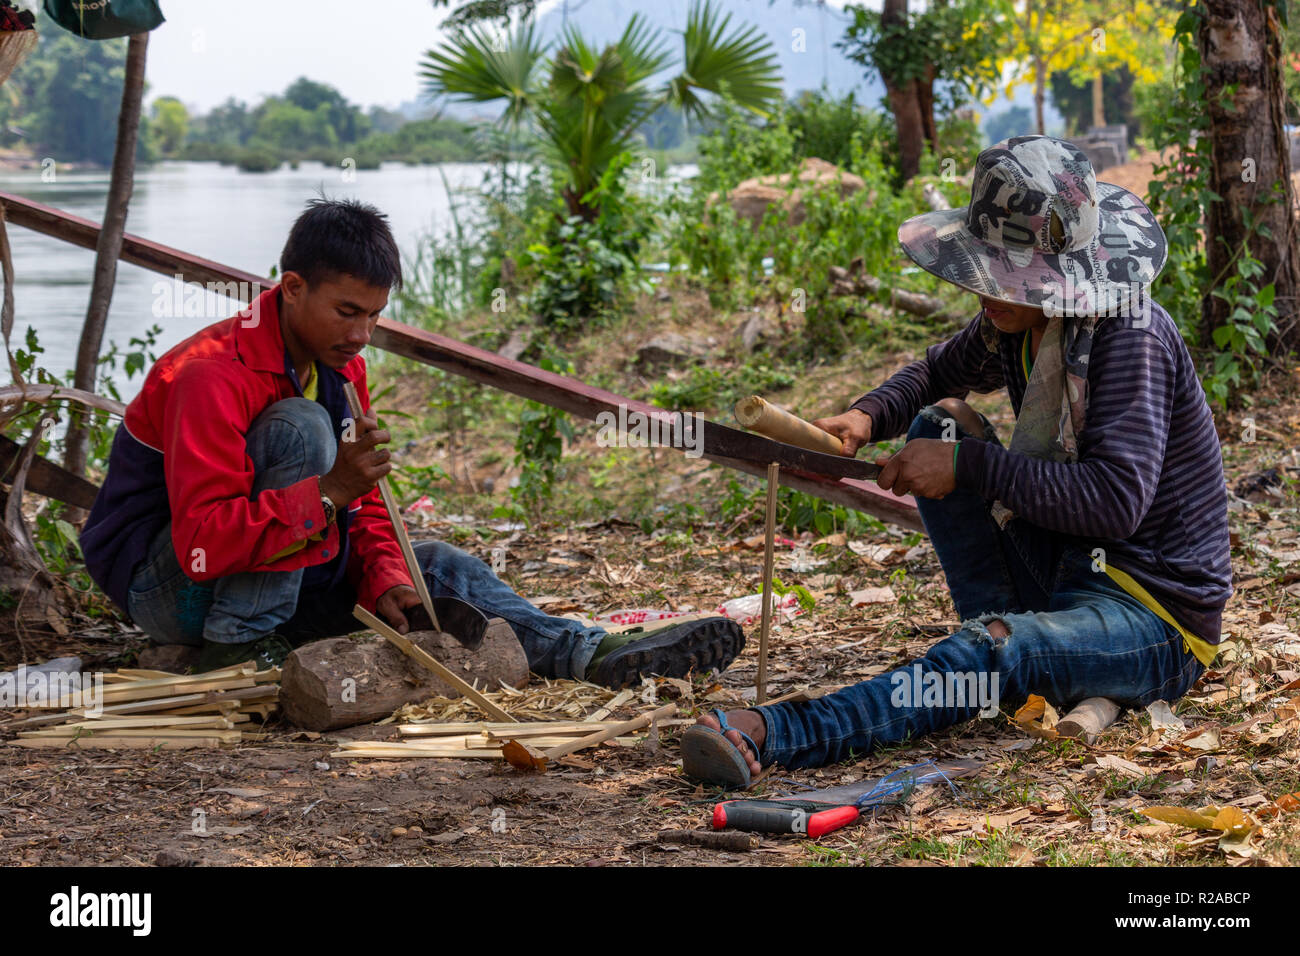 Don Det, Laos - Abril 24, 2018: los hombres locales haciendo trabajos manuales con bambú cerca del río Mekong Foto de stock